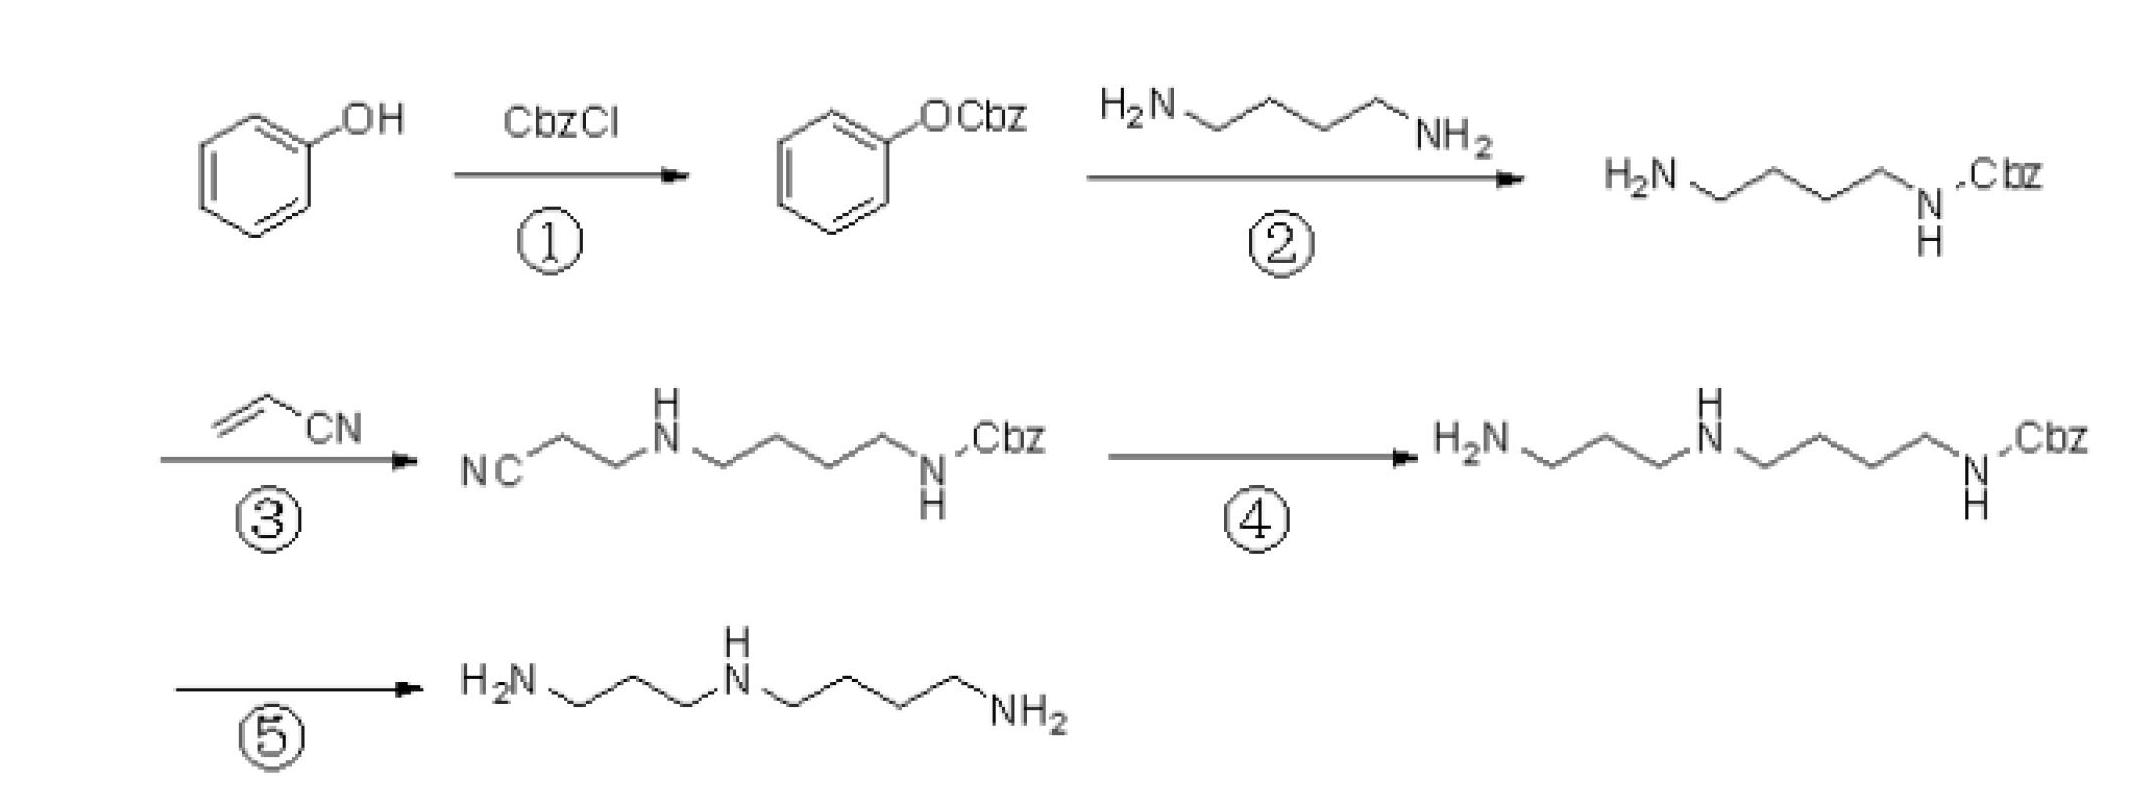 Synthesizing method of spermidine